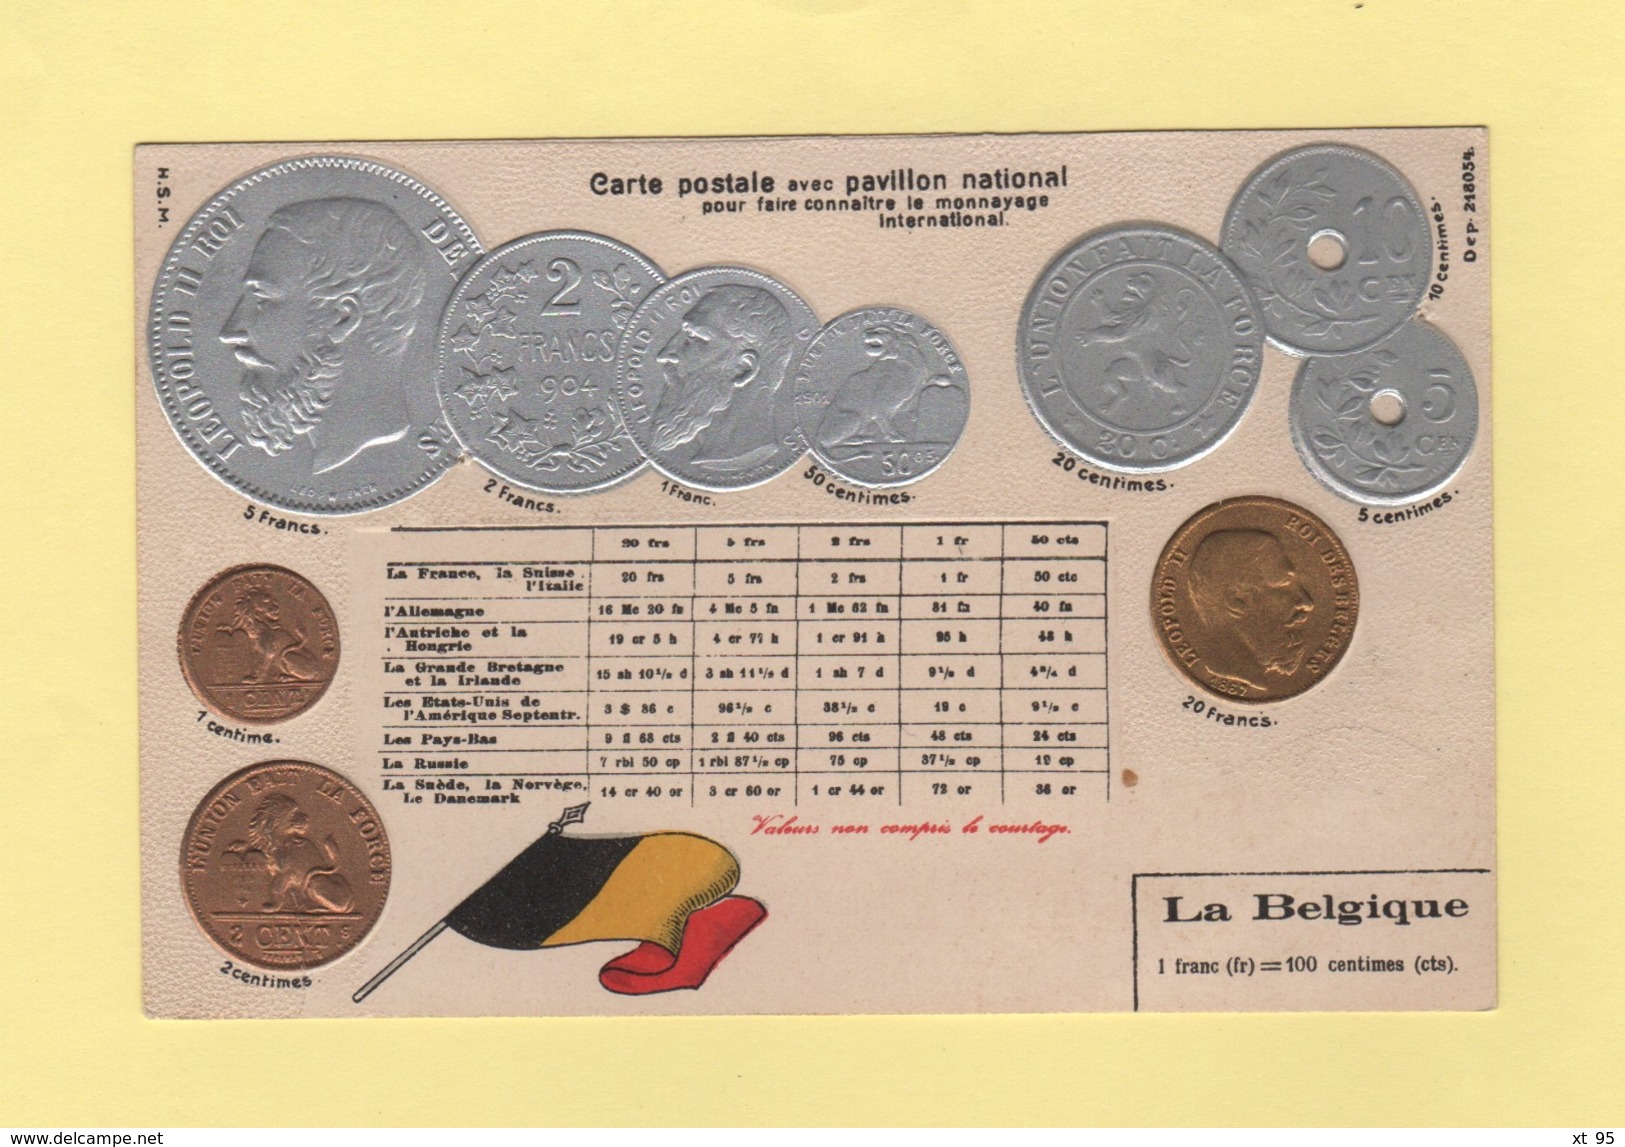 Pour Faire Connaitre Le Monnayage International - Pavillon National - La Belgique - Coins (pictures)